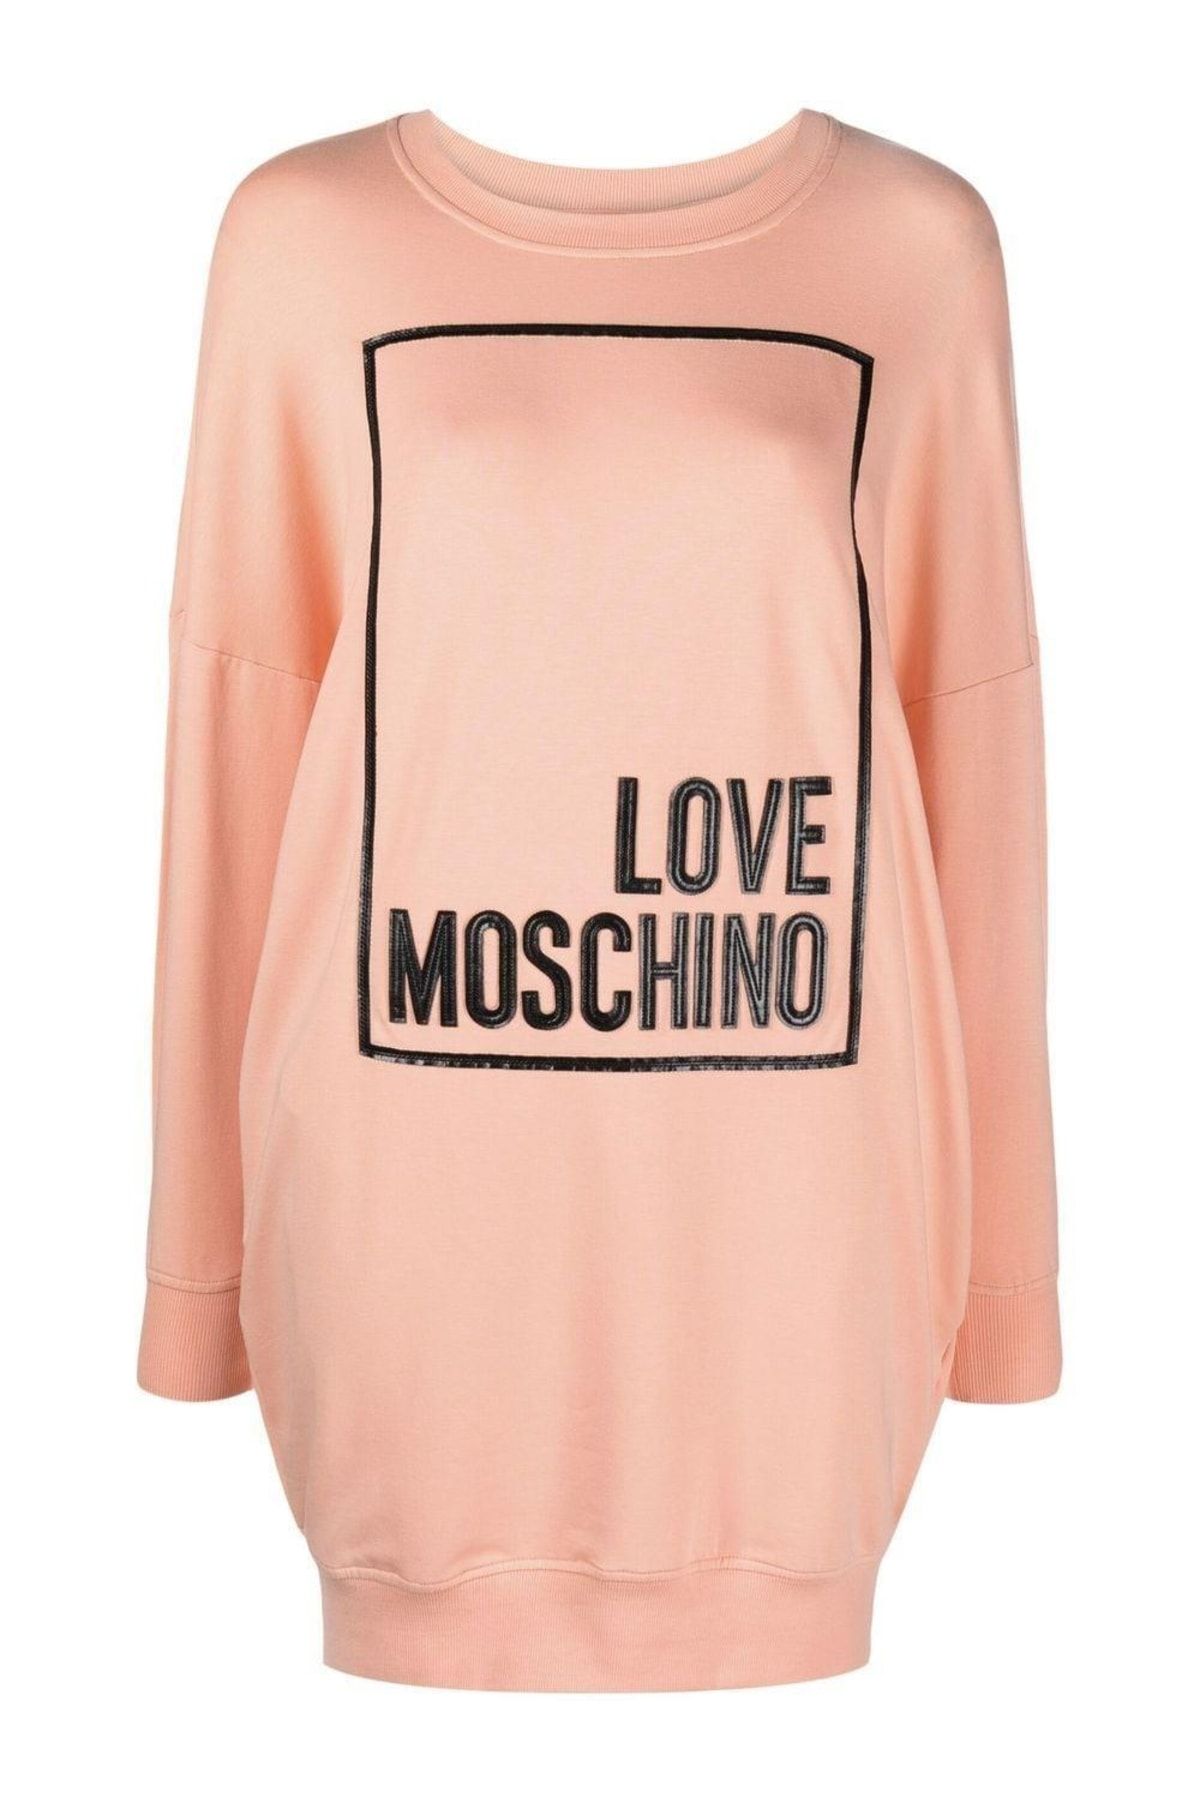 Moschino Sweatshirt Dresses For Women